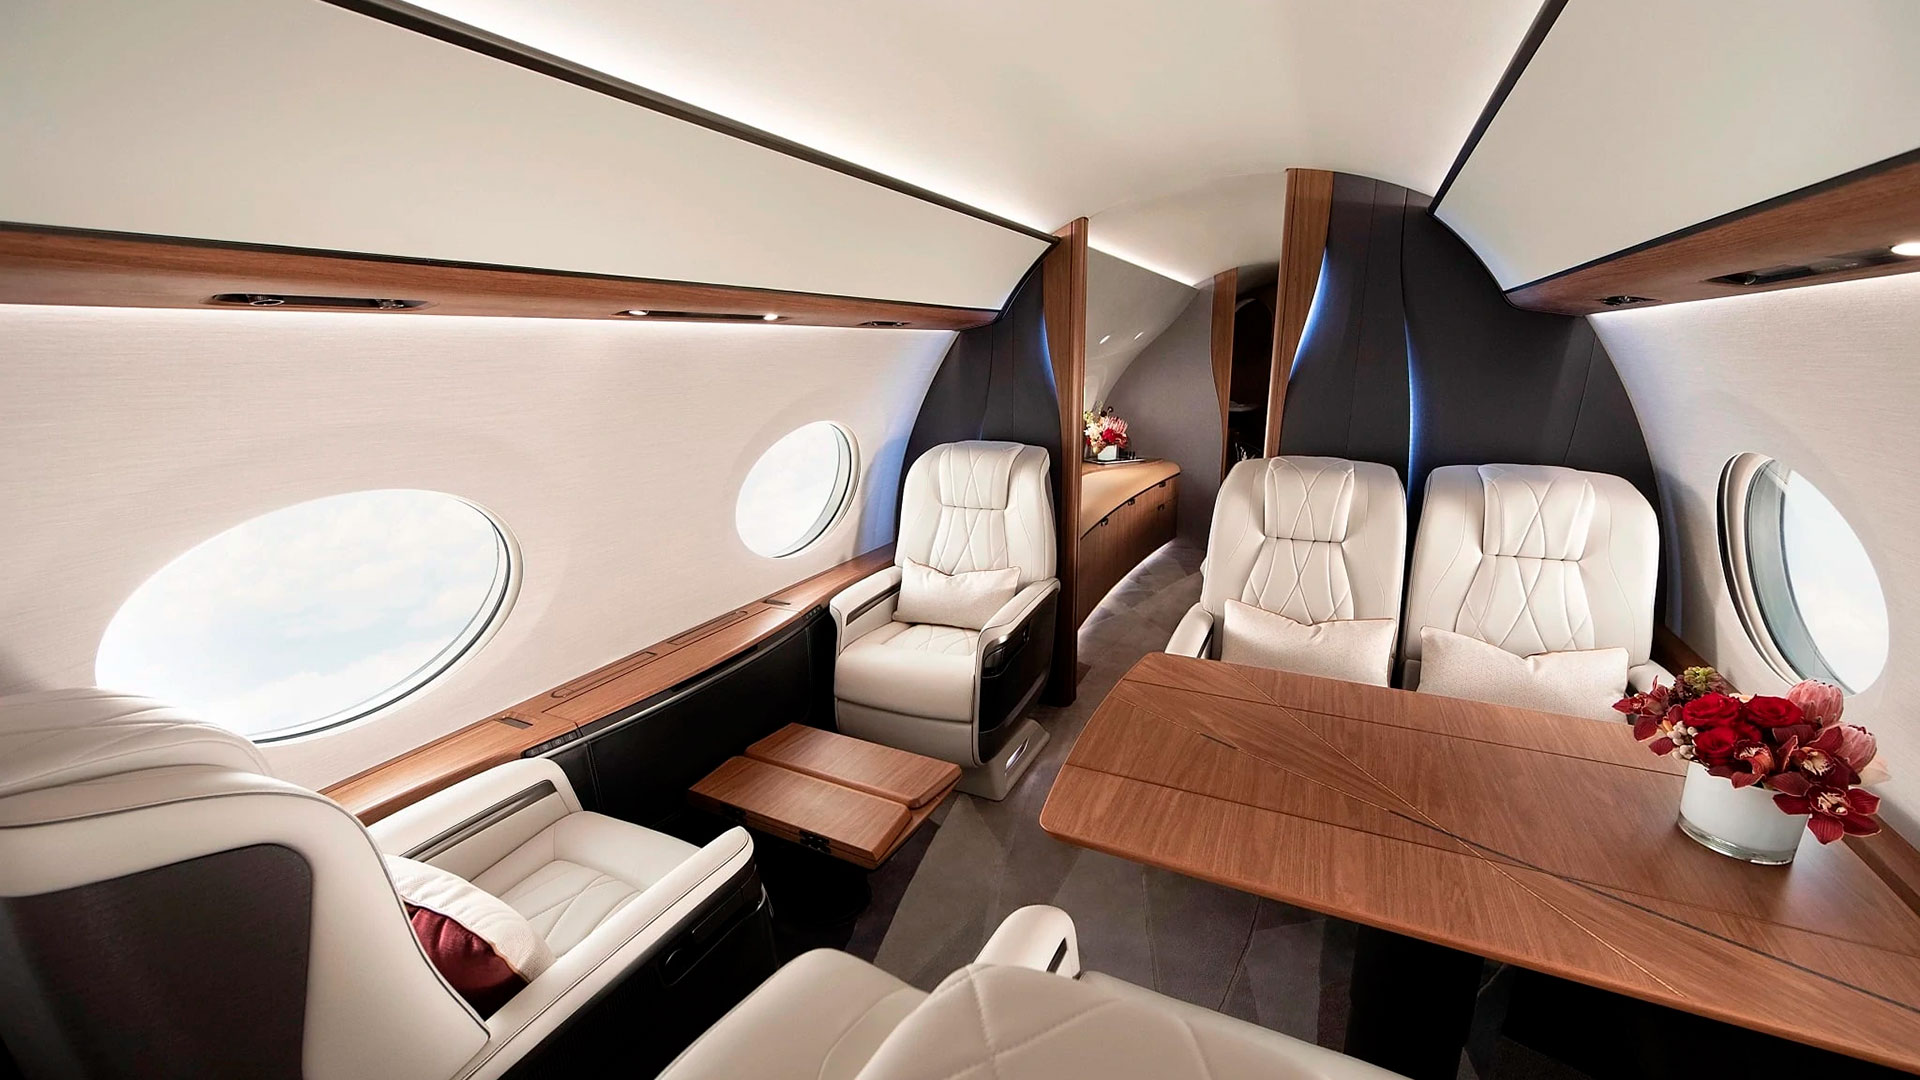 El jet cuenta con ventanas ovaladas panorámicas y asientos convertibles en camas ergonómicas